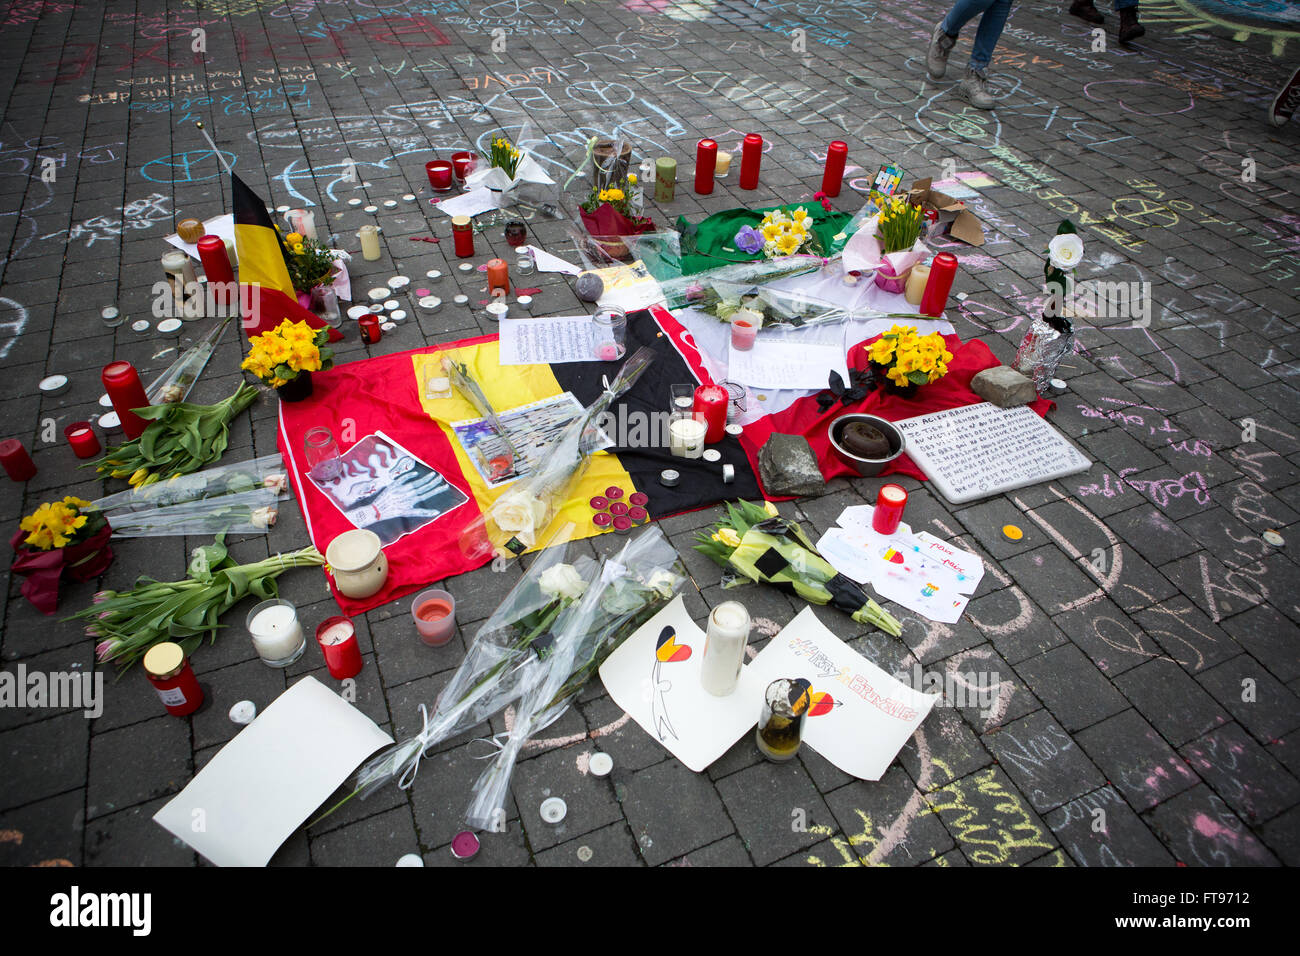 Namur, Bélgica. 25 Mar, 2016. Mensajes, dibujos, flores, velas sentar alrededor de una bandera belga durante el homenaje a las víctimas de los ataques terroristas del 22 de marzo en Bruselas en Namur, Bélgica. Crédito: Frédéric de Laminne/Alamy Live News Foto de stock